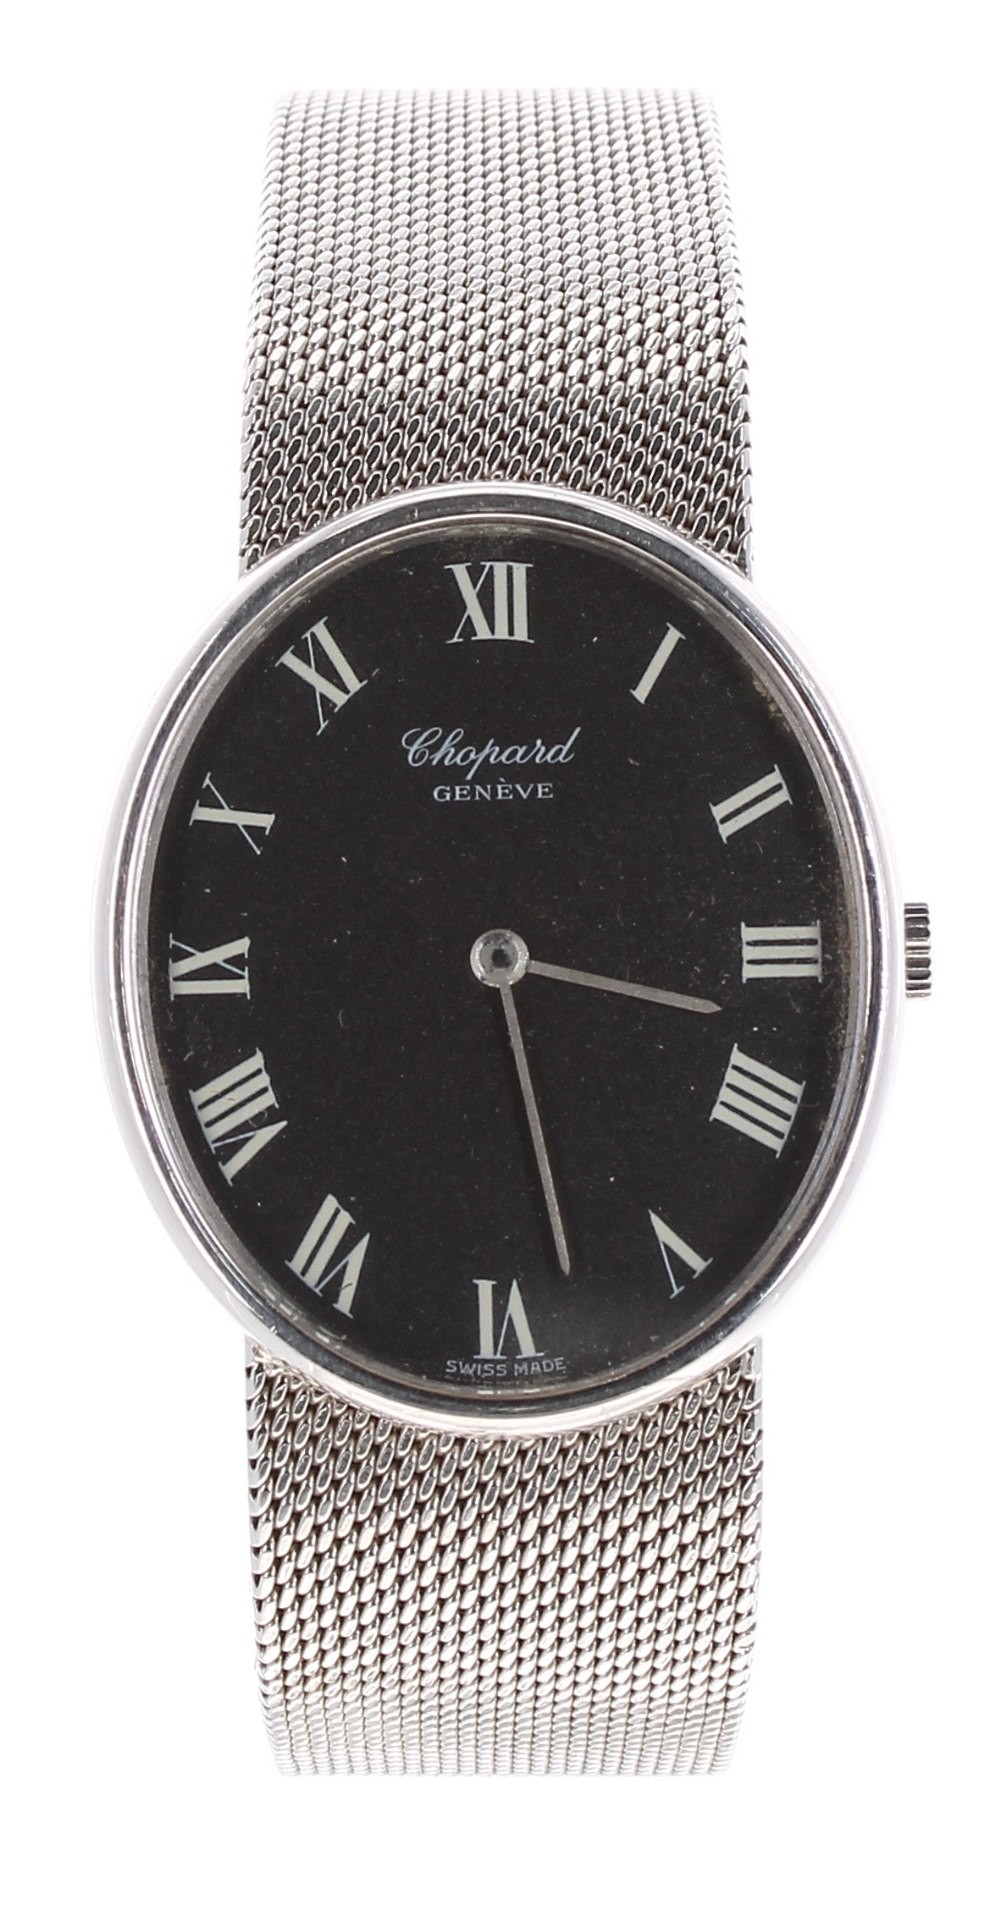 Chopard, Genéve 18ct white gold unisex dress bracelet watch, ref. 2023, circa 1980s, serial no.